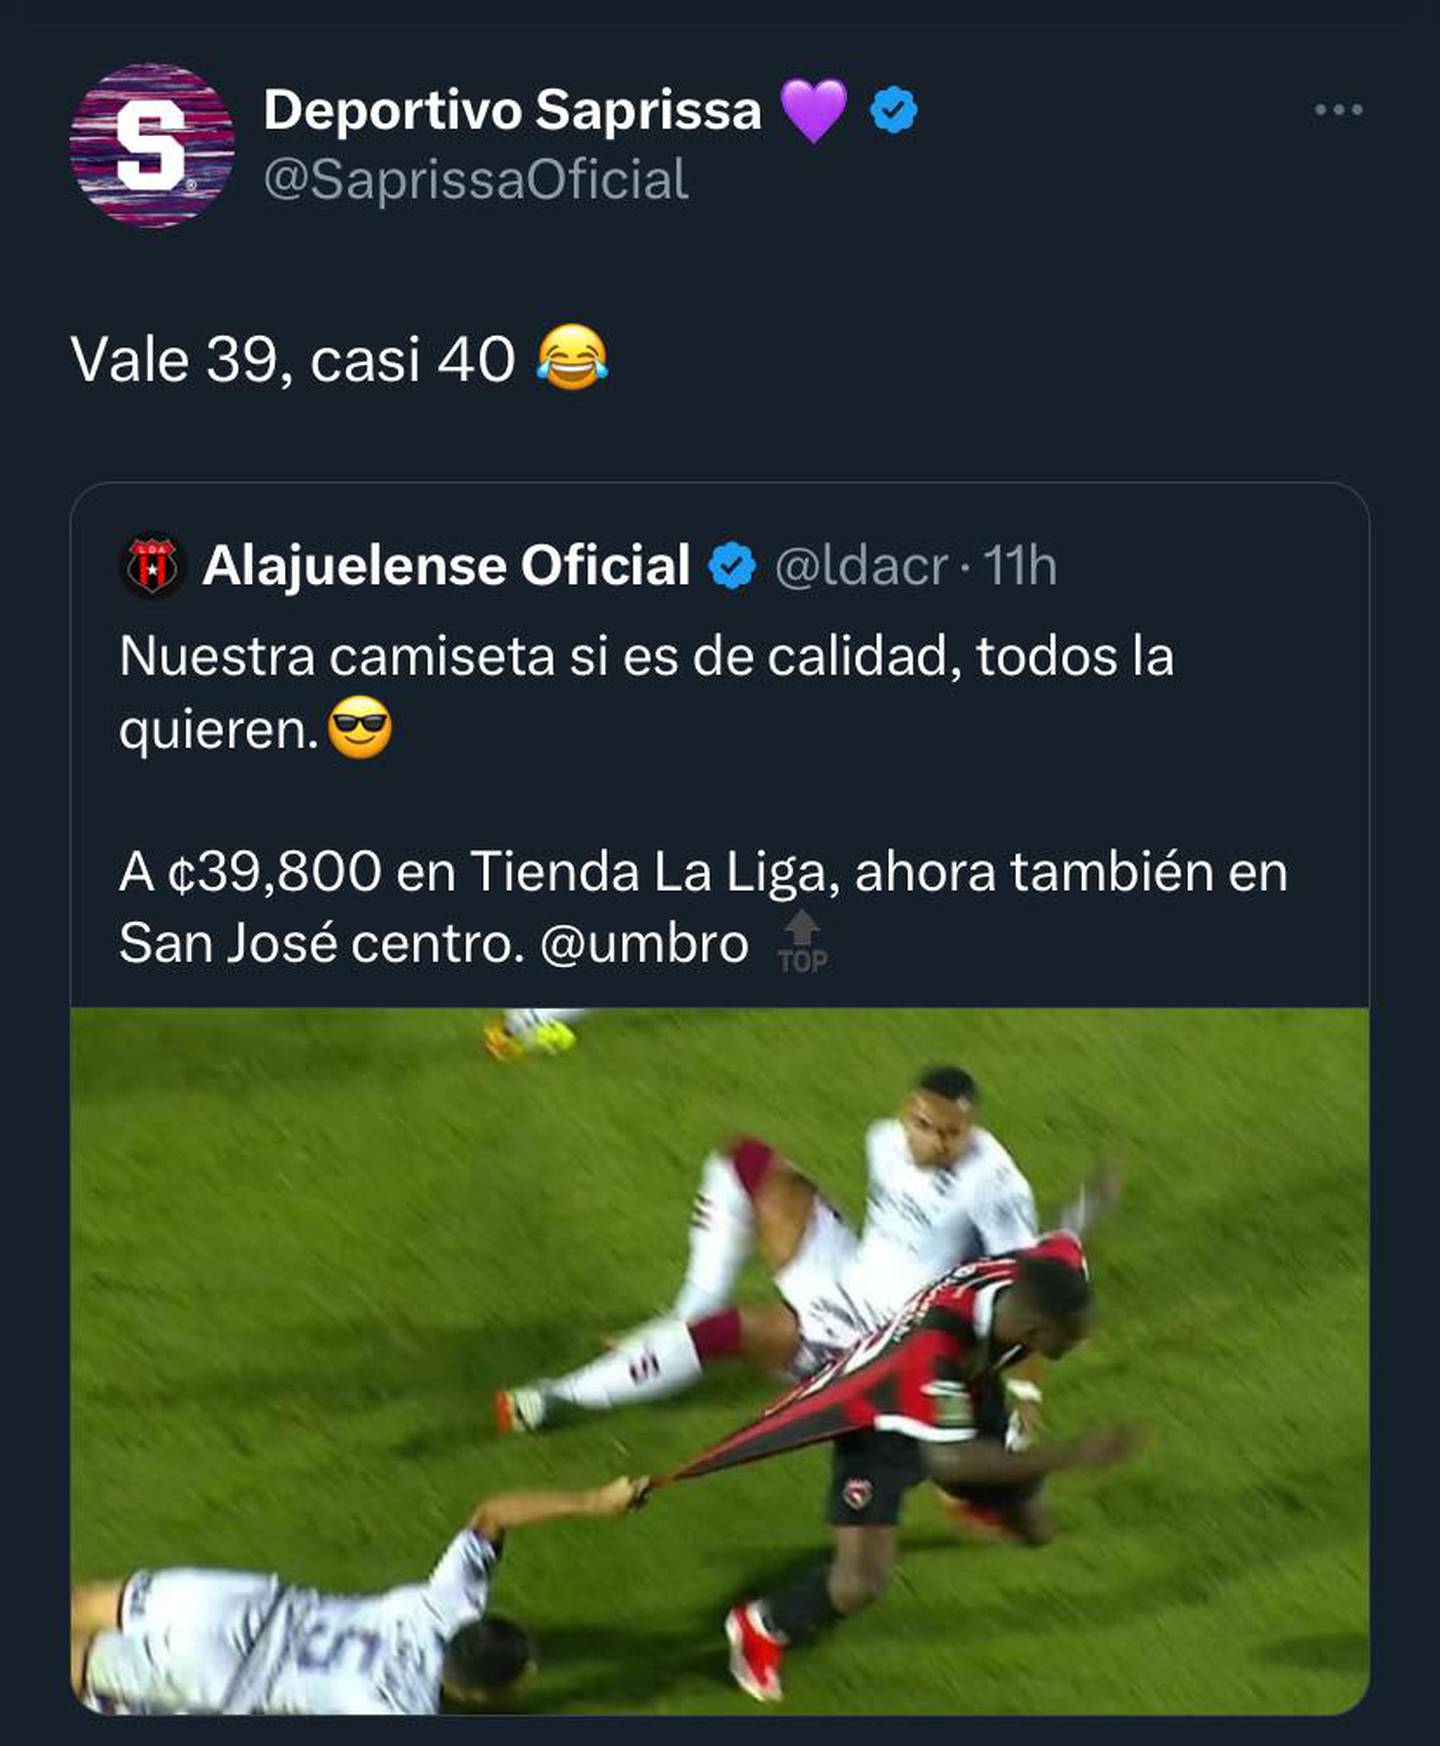 El Deportivo Saprissa y Alajuelense están en guerra en redes sociales. X